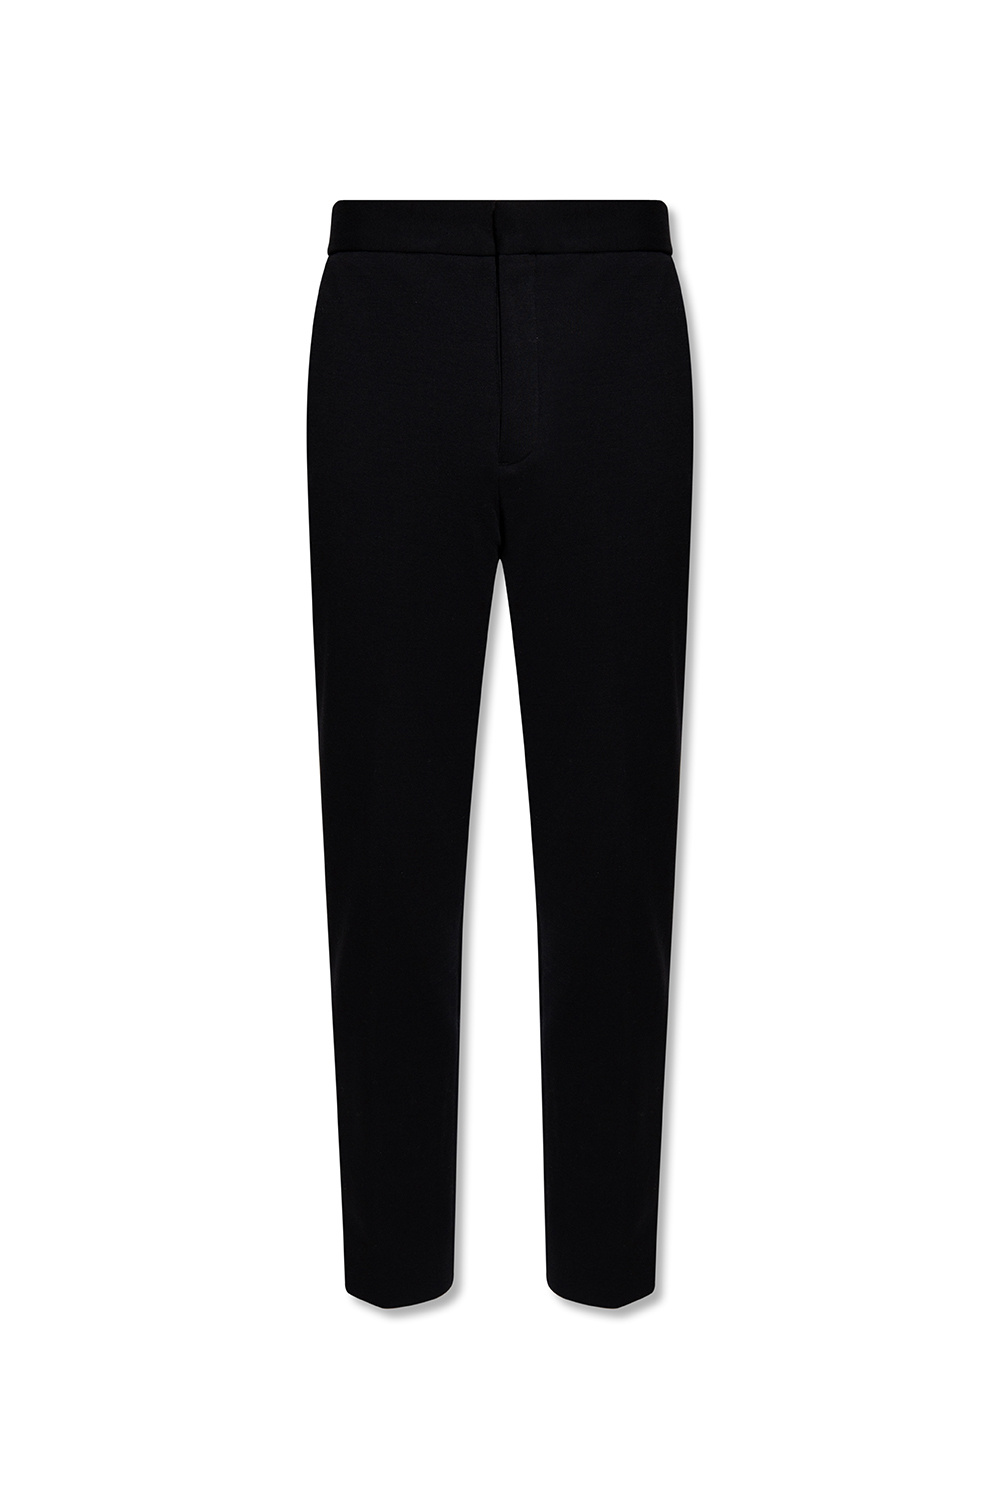 AllSaints ‘Agden’ pleat-front trousers